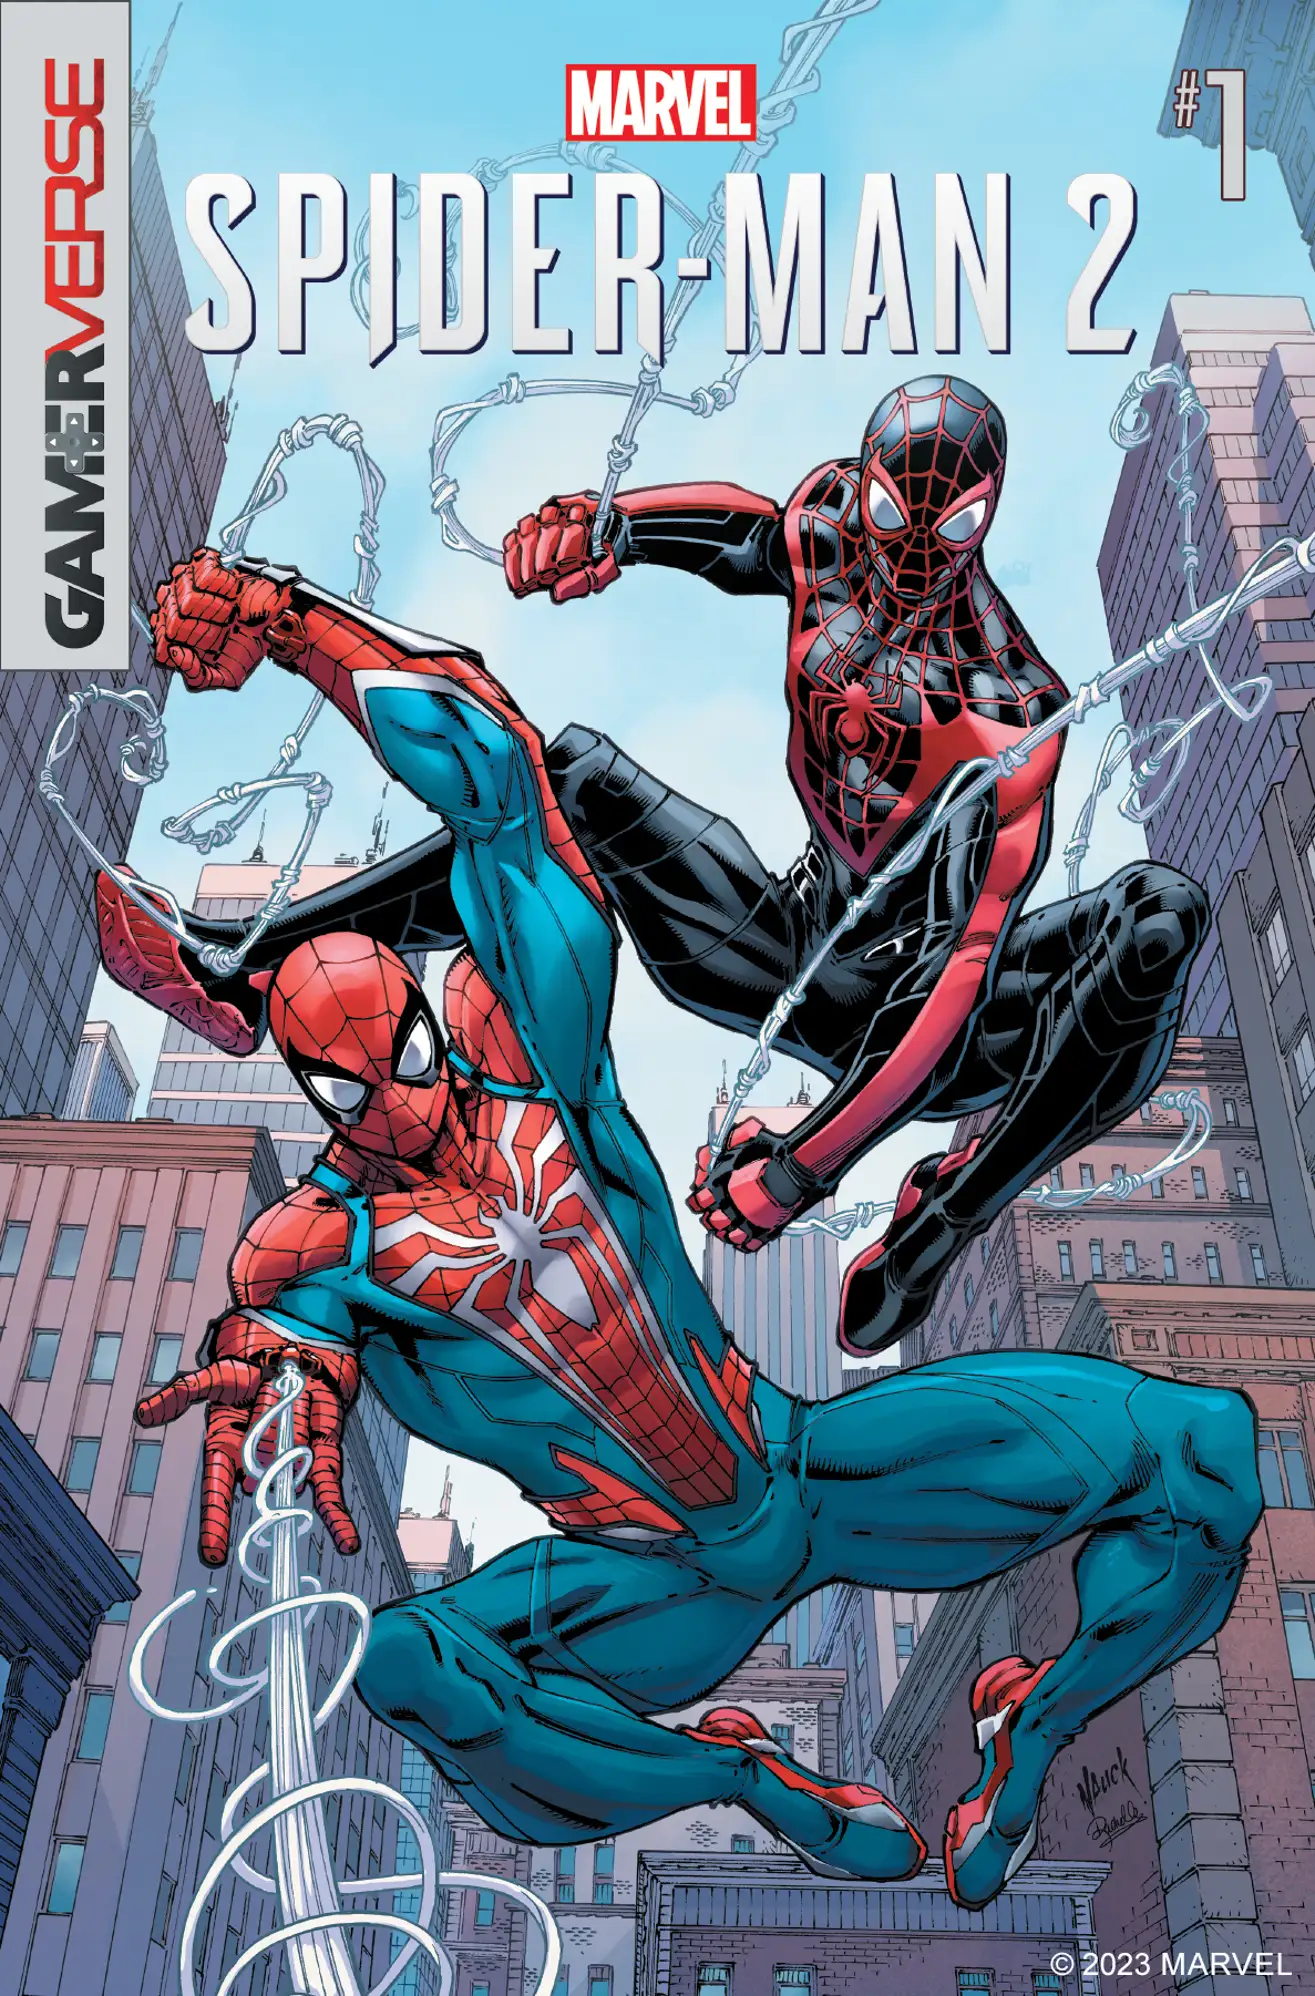 Imagem mostra a capa de gibi que servirá para anteceder os eventos do jogo Marvel's Spider-Man 2